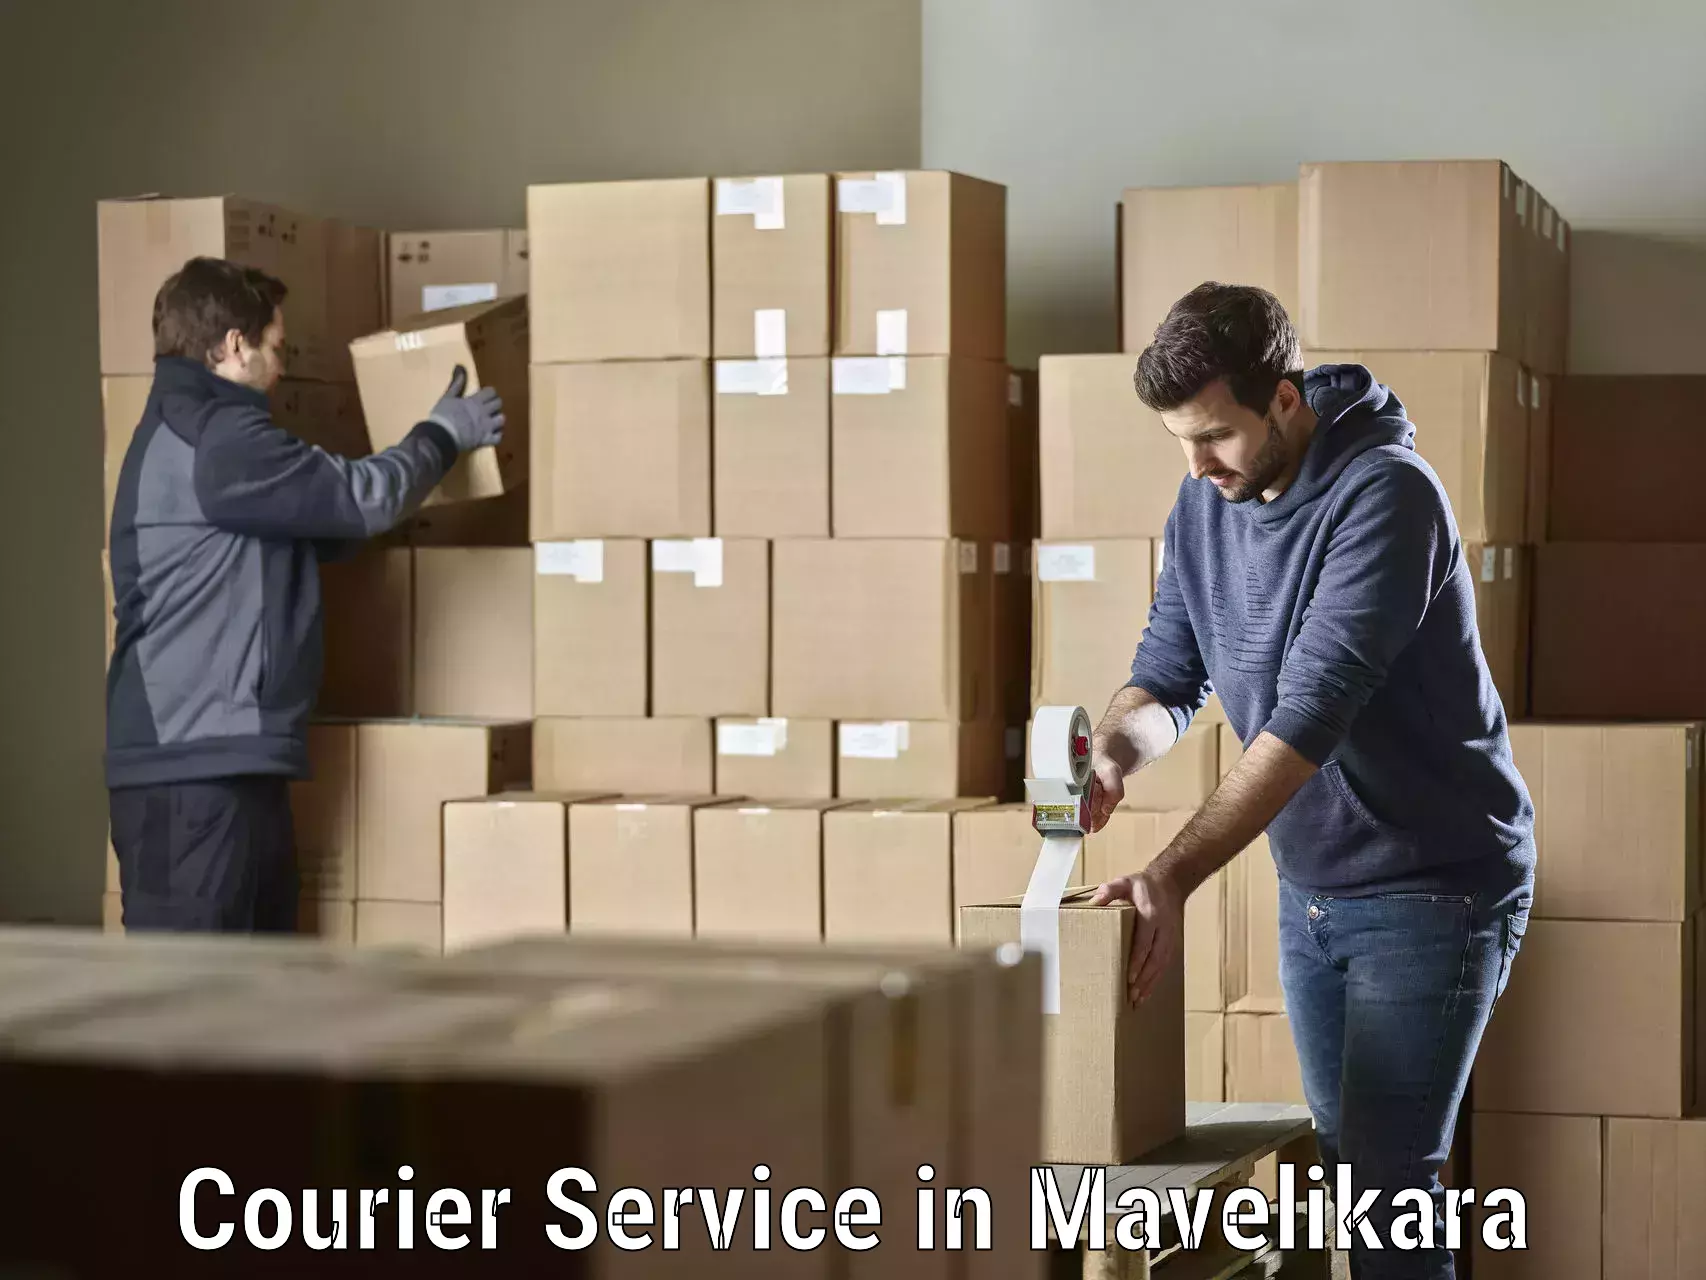 Efficient parcel transport in Mavelikara